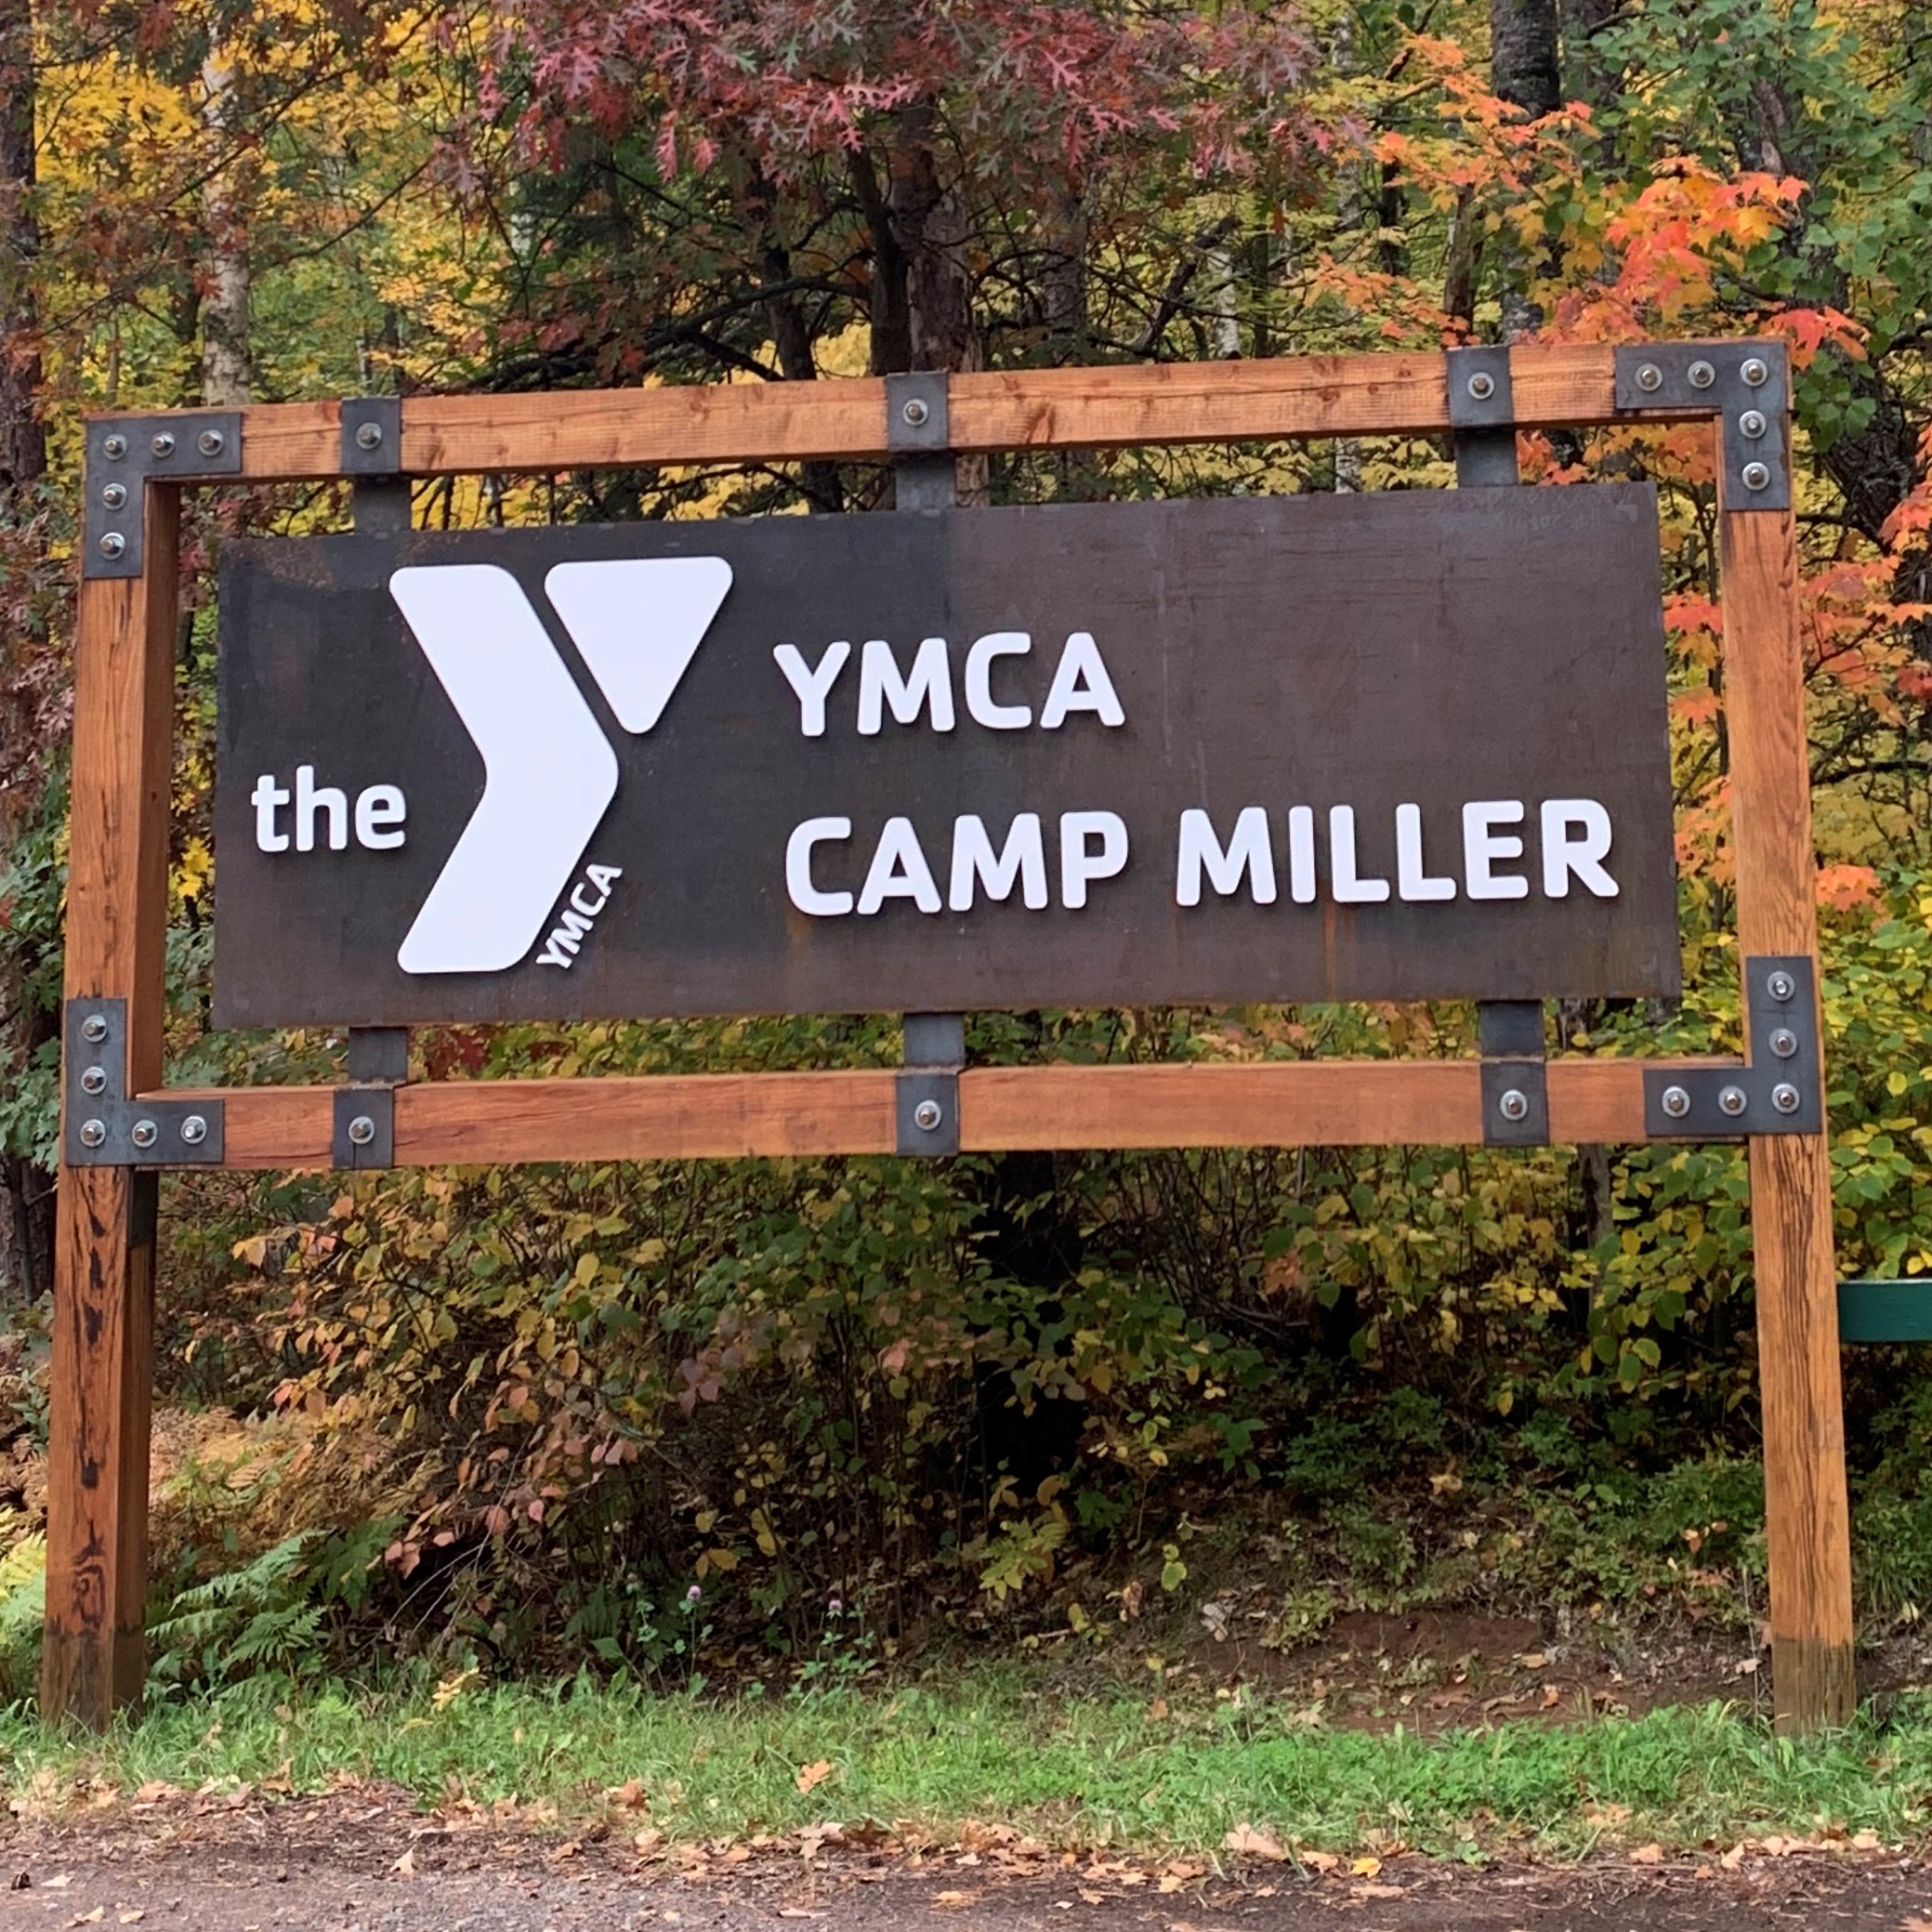 Entrance to camp miller